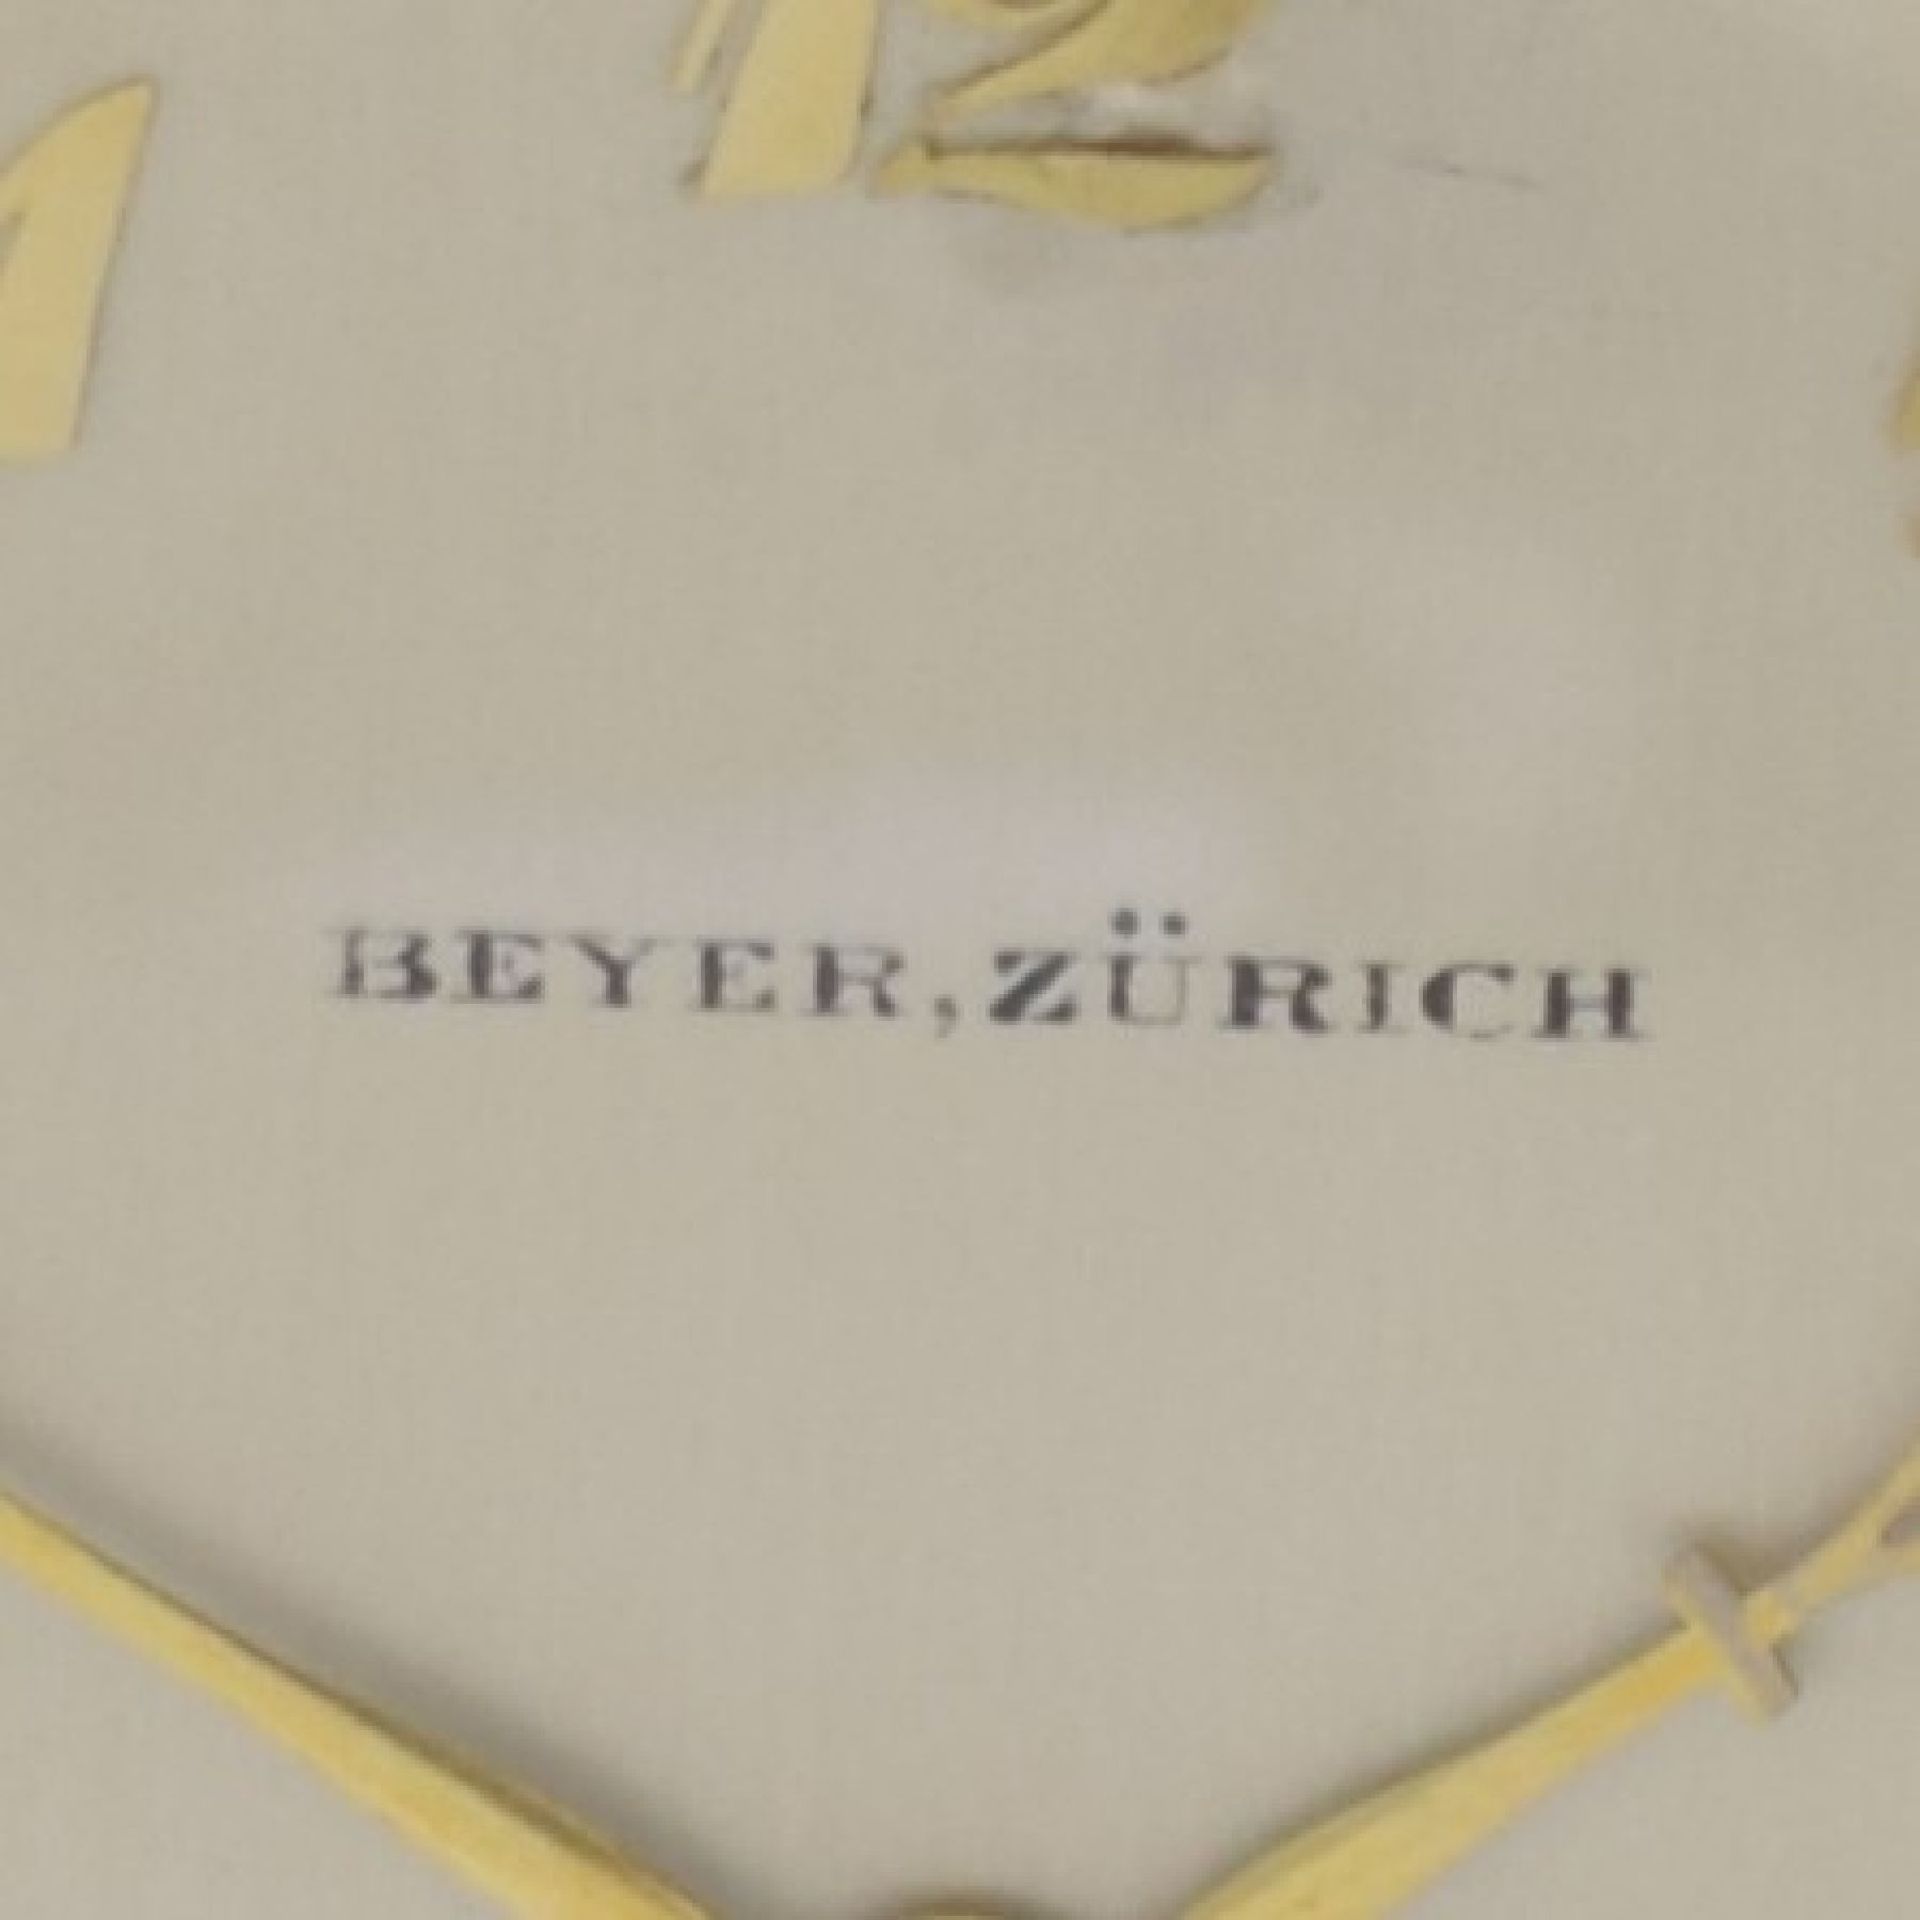 BEYER ZÜRICH offene Herrentaschenuhr in GG 750/000 mit Minutenrepetition, Schweiz um 1930, glattes - Bild 2 aus 6